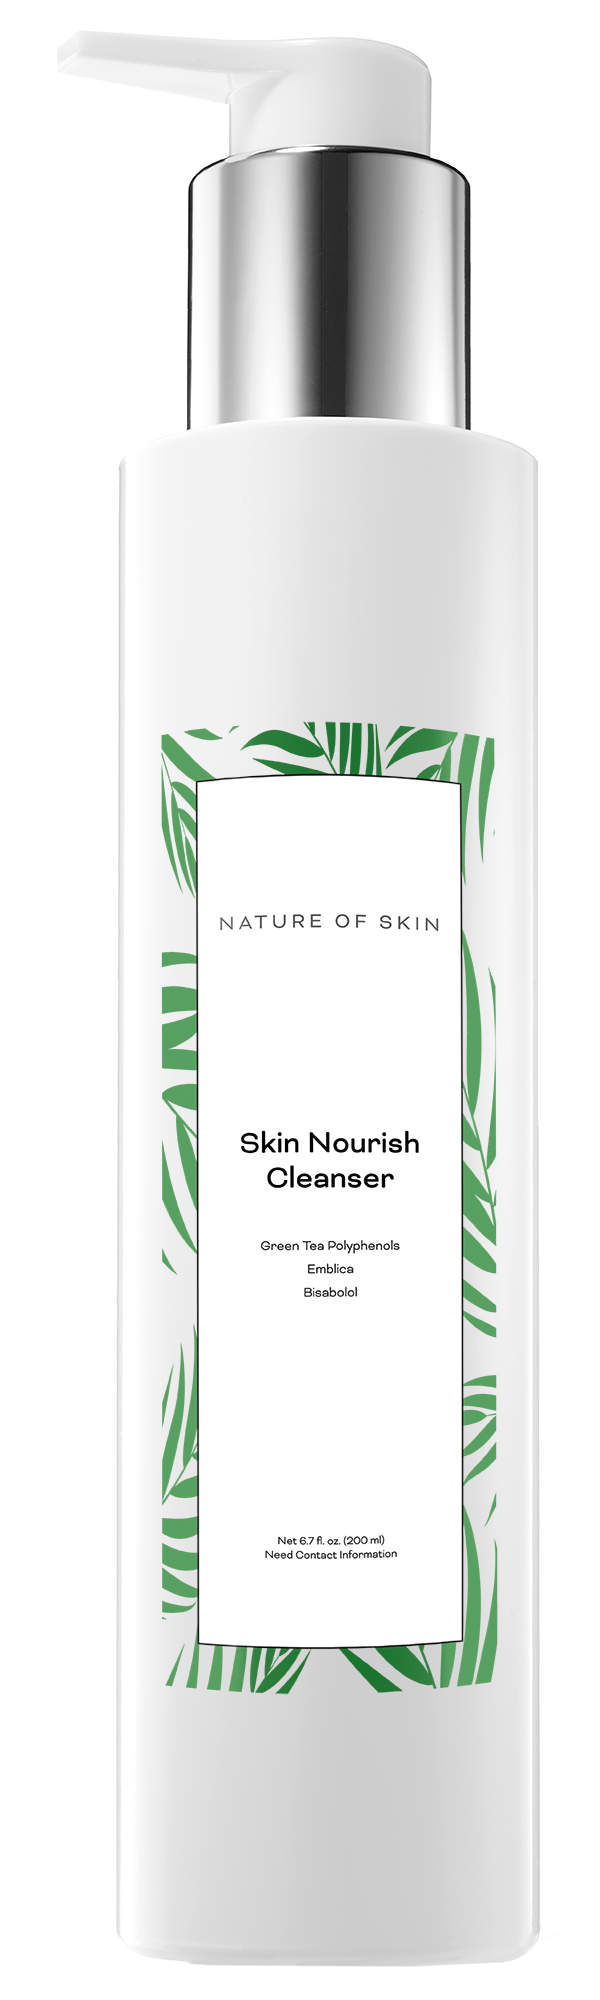 Skin Nourish Cleanser